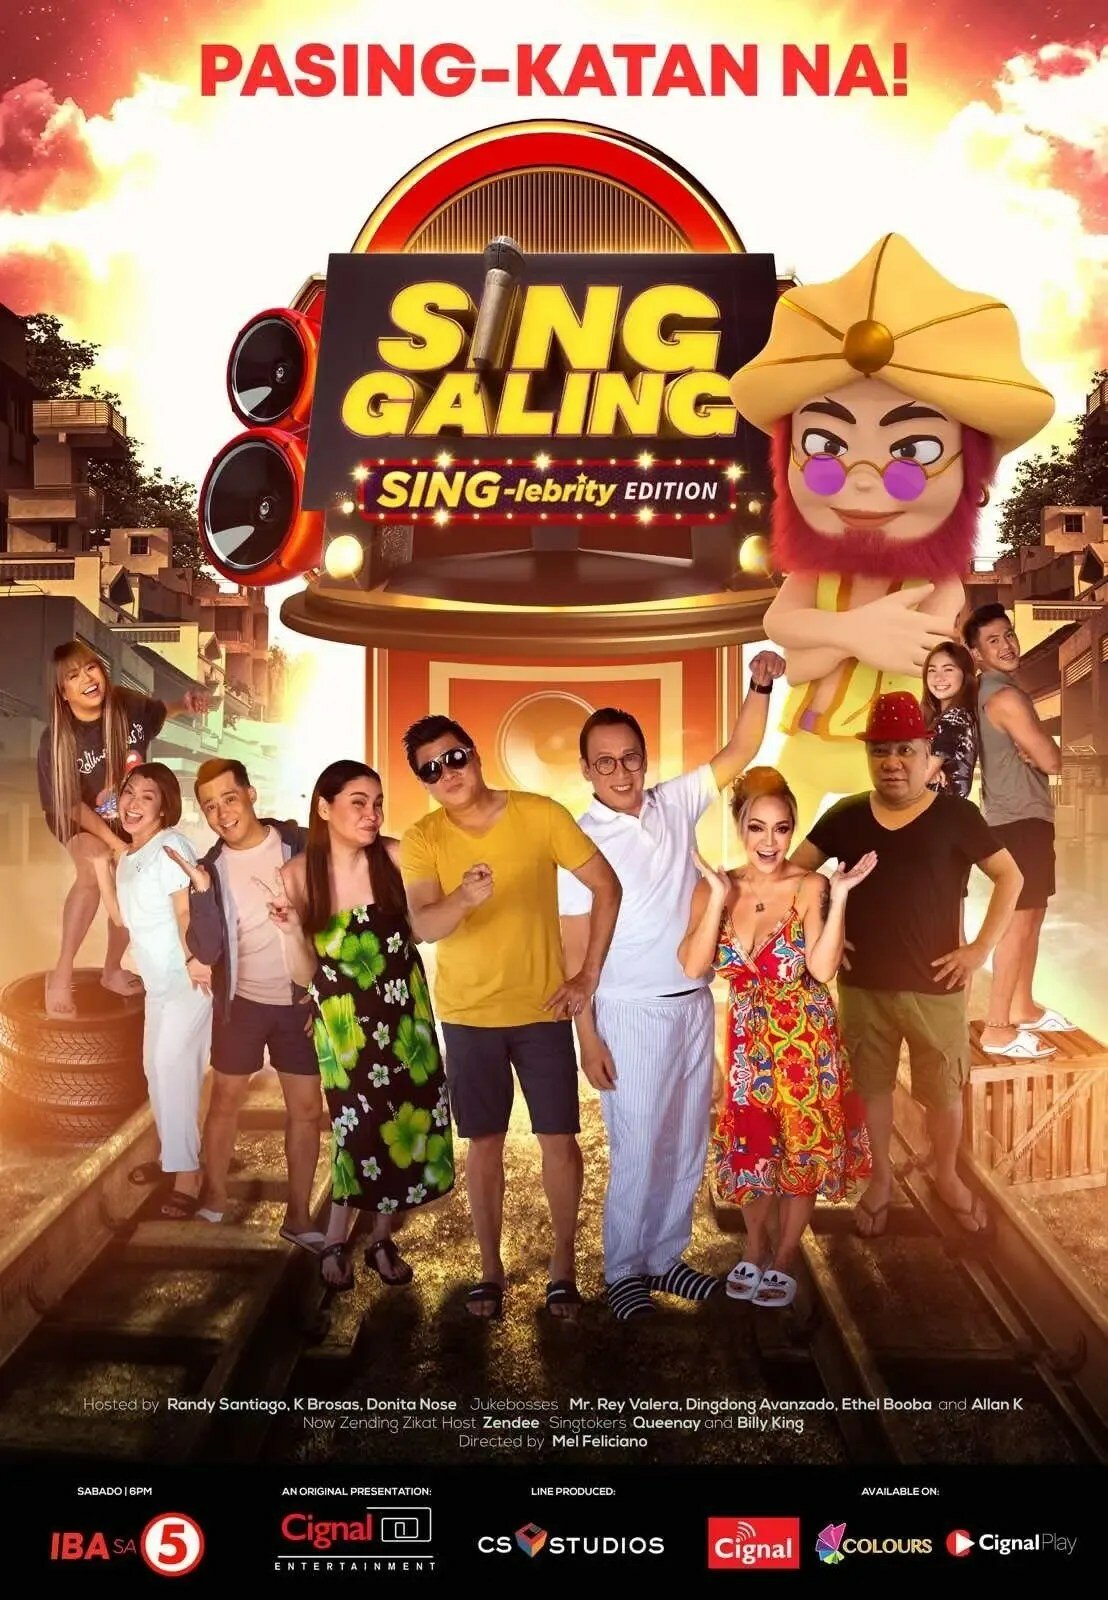 Sing Galing: SING-lebrity Edition ne zaman